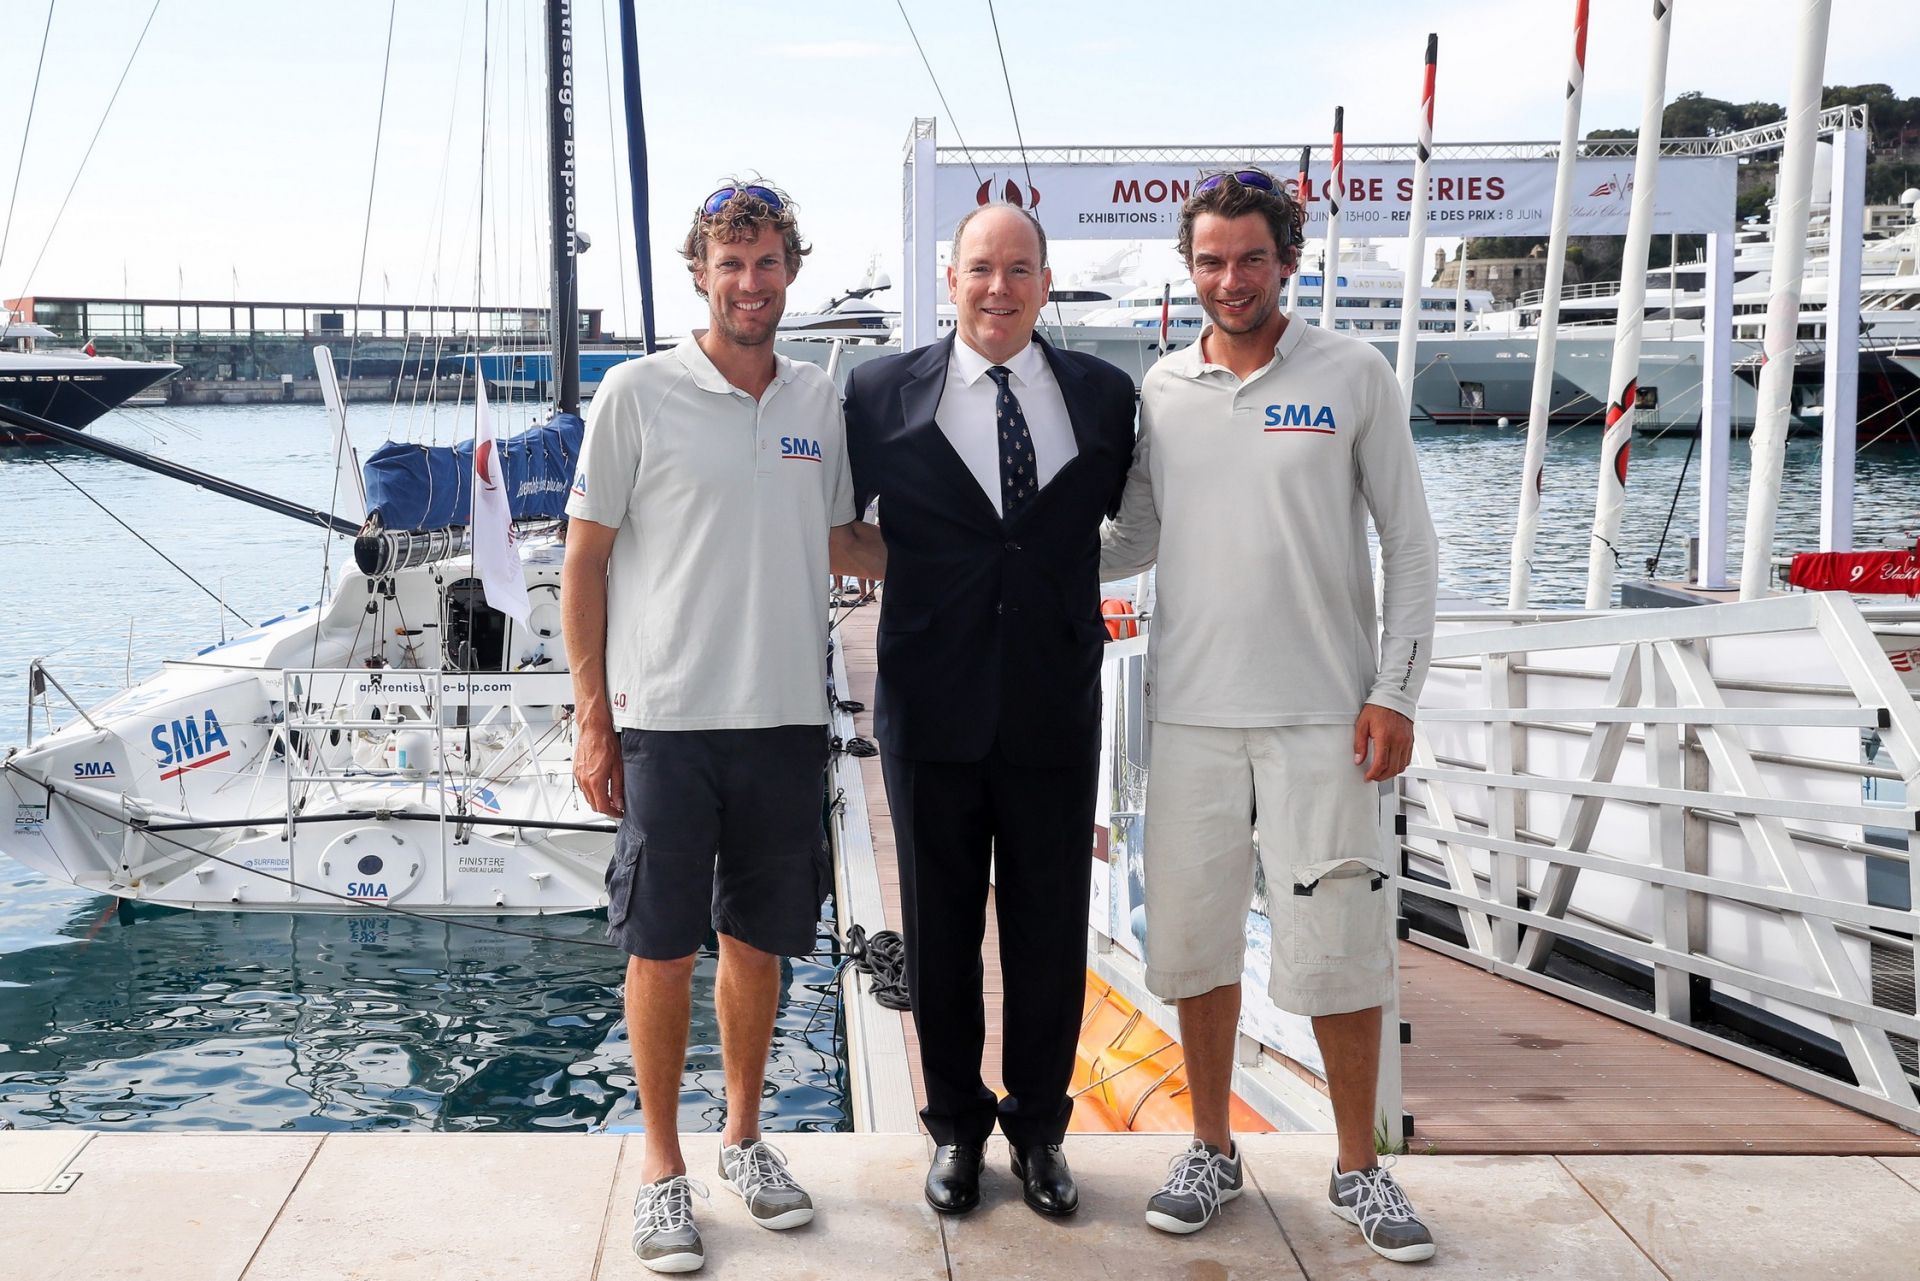 Vittoria di SMA alla prima Monaco Globe Series - NEWS - Yacht Club Costa Smeralda